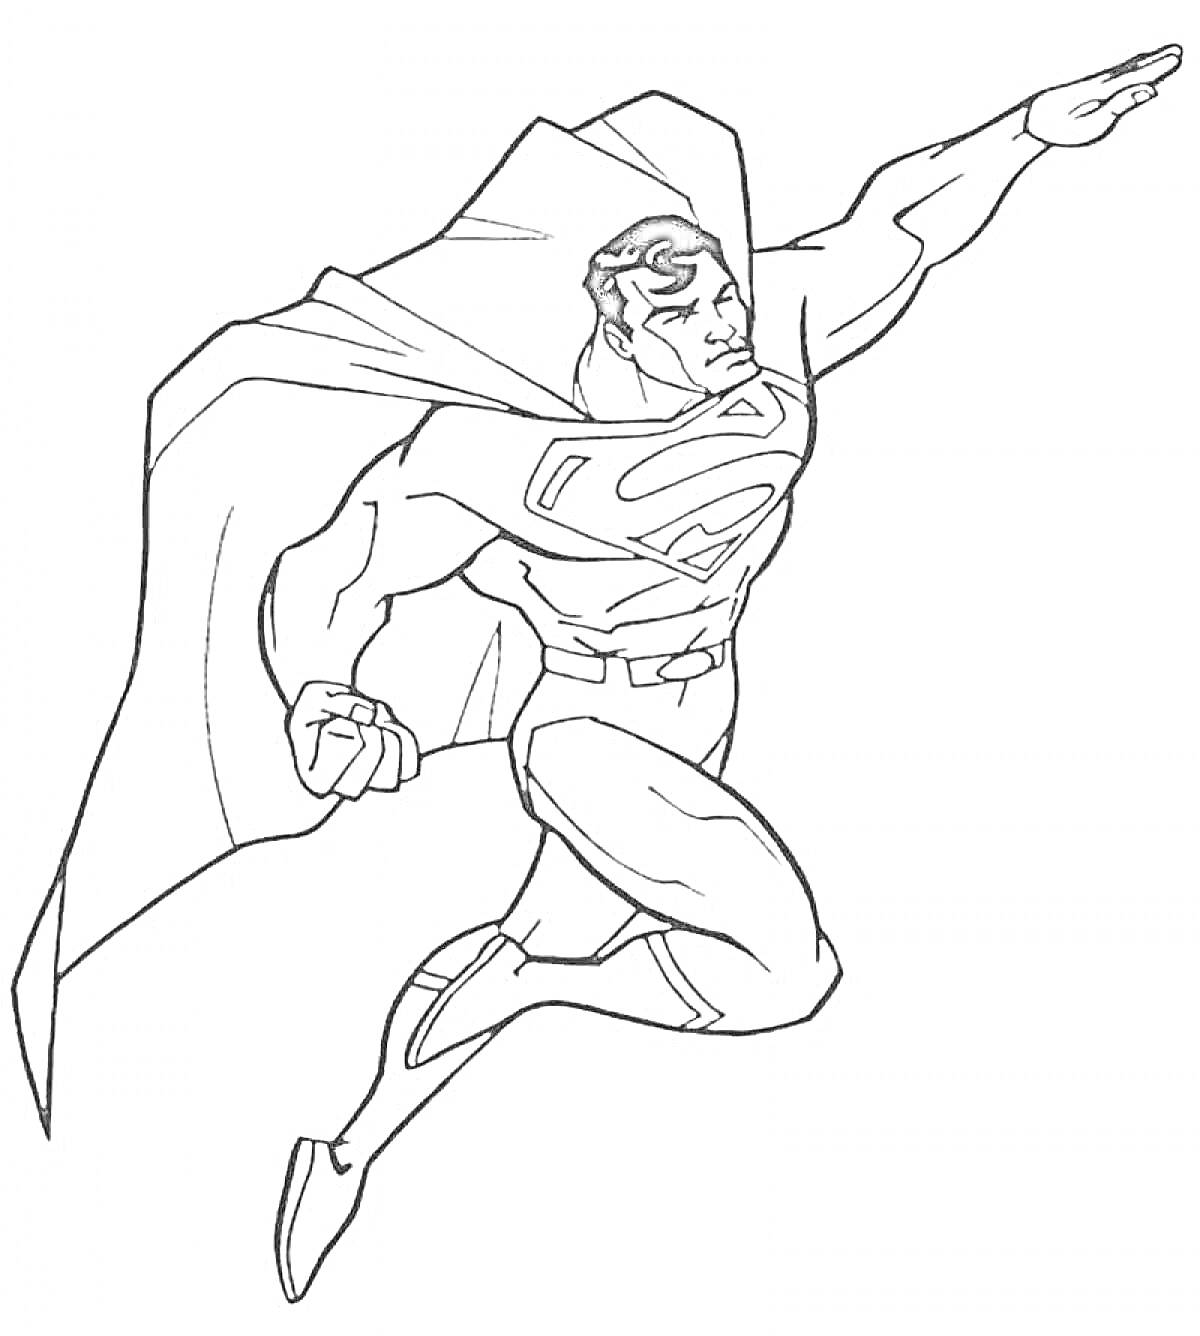 Раскраска Летящий Супермен с поднятой рукой и накидкой